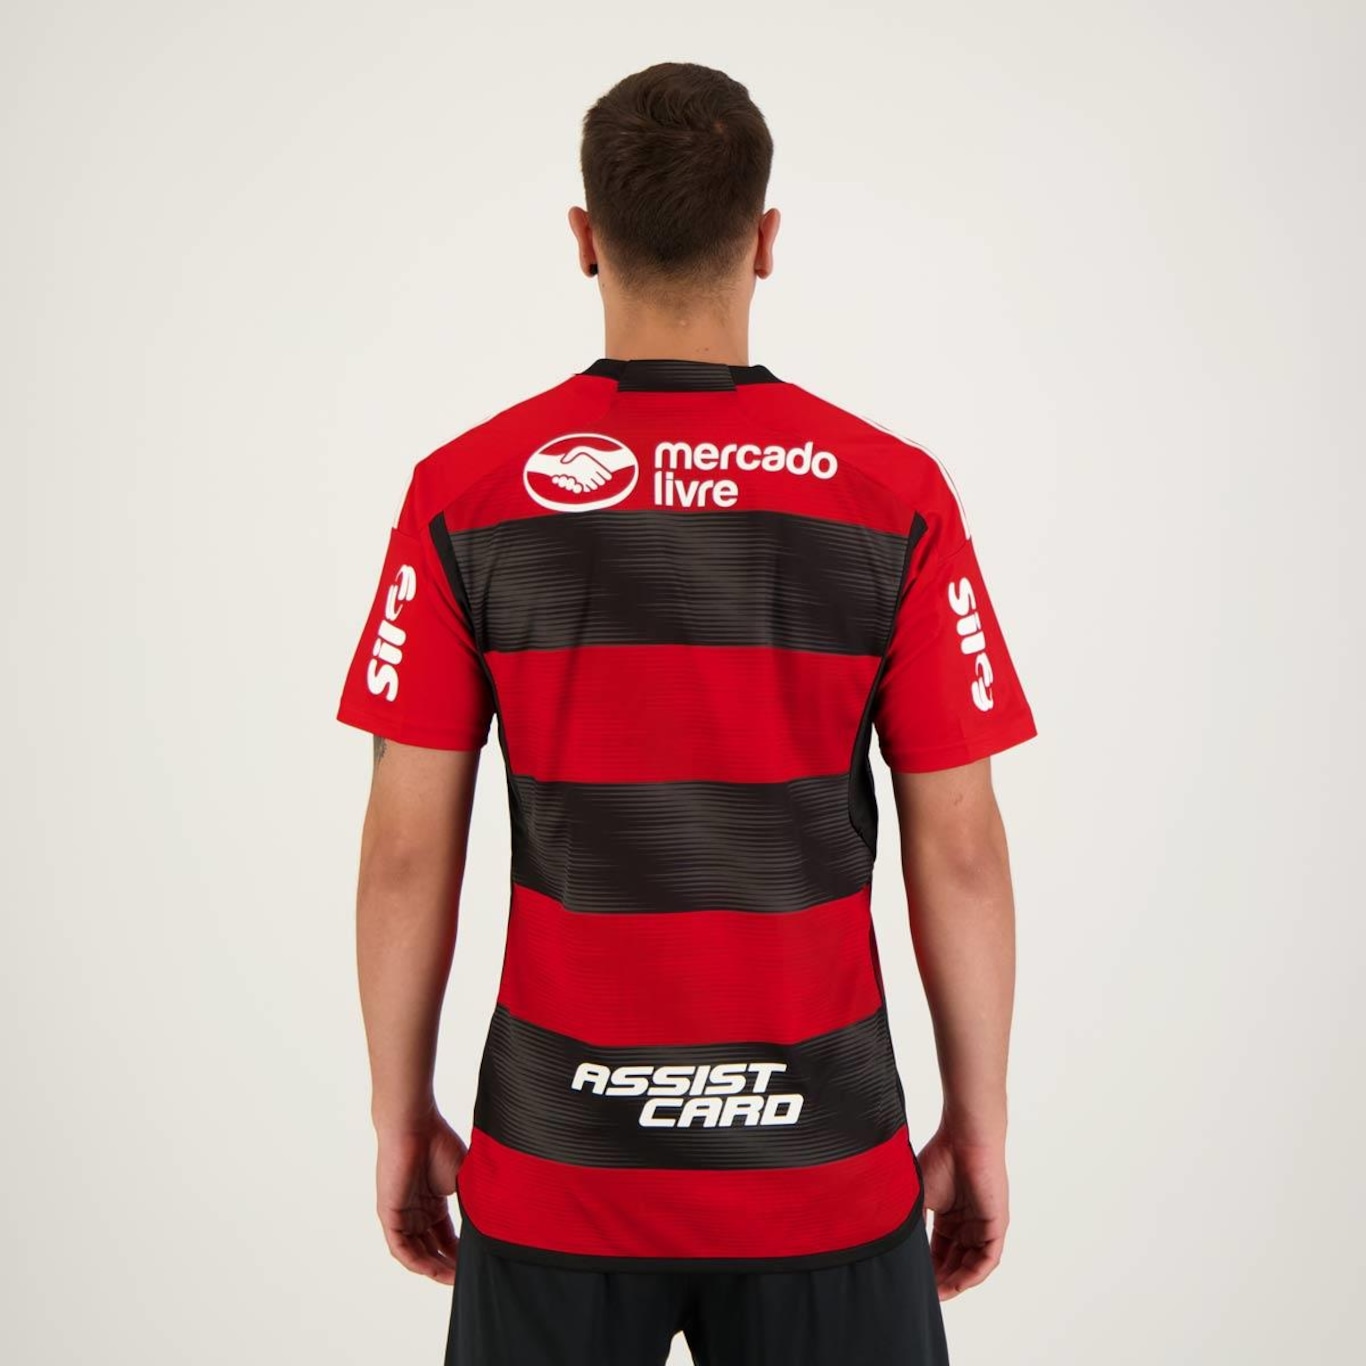 Camisa do Flamengo I 2023 com Patrocínio adidas - Masculina em